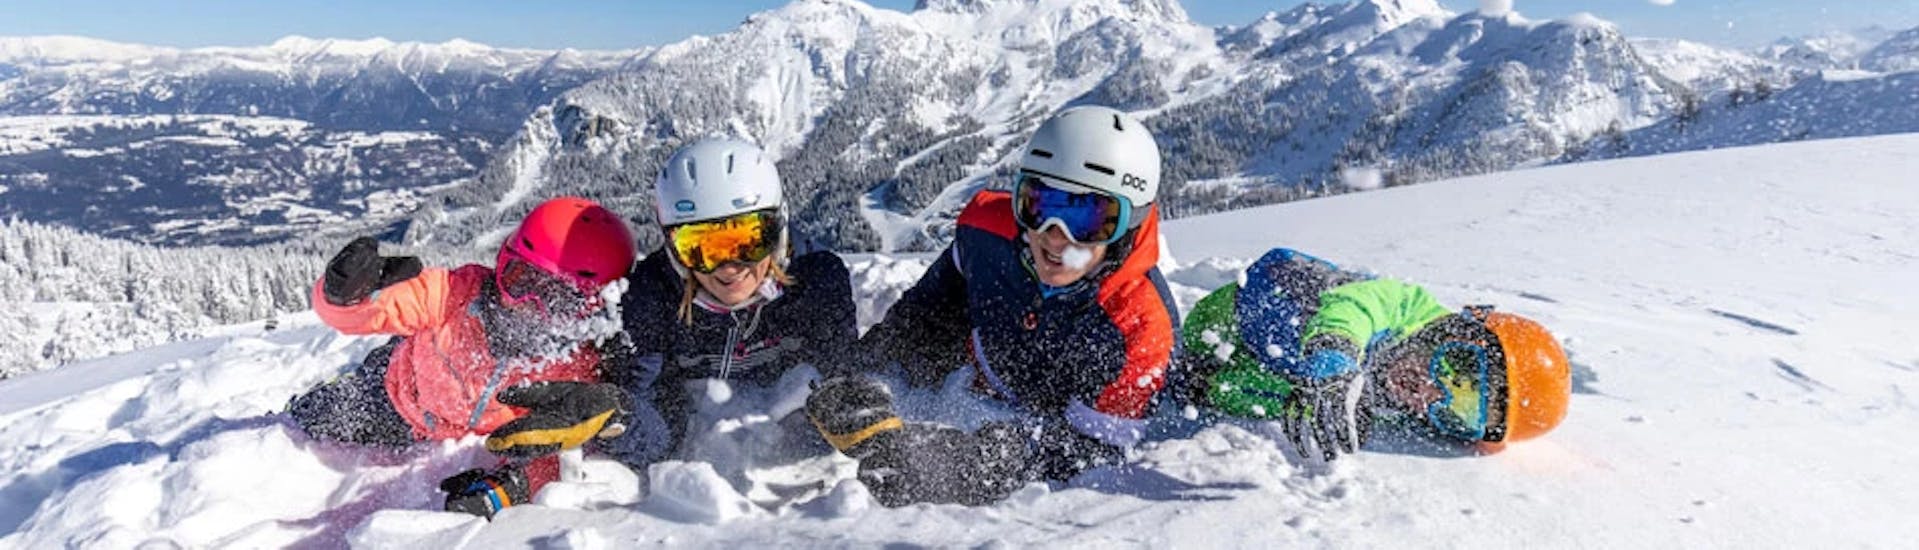 Lezioni private di sci per adulti per tutti i livelli con Die Skischule.at Nassfeld.